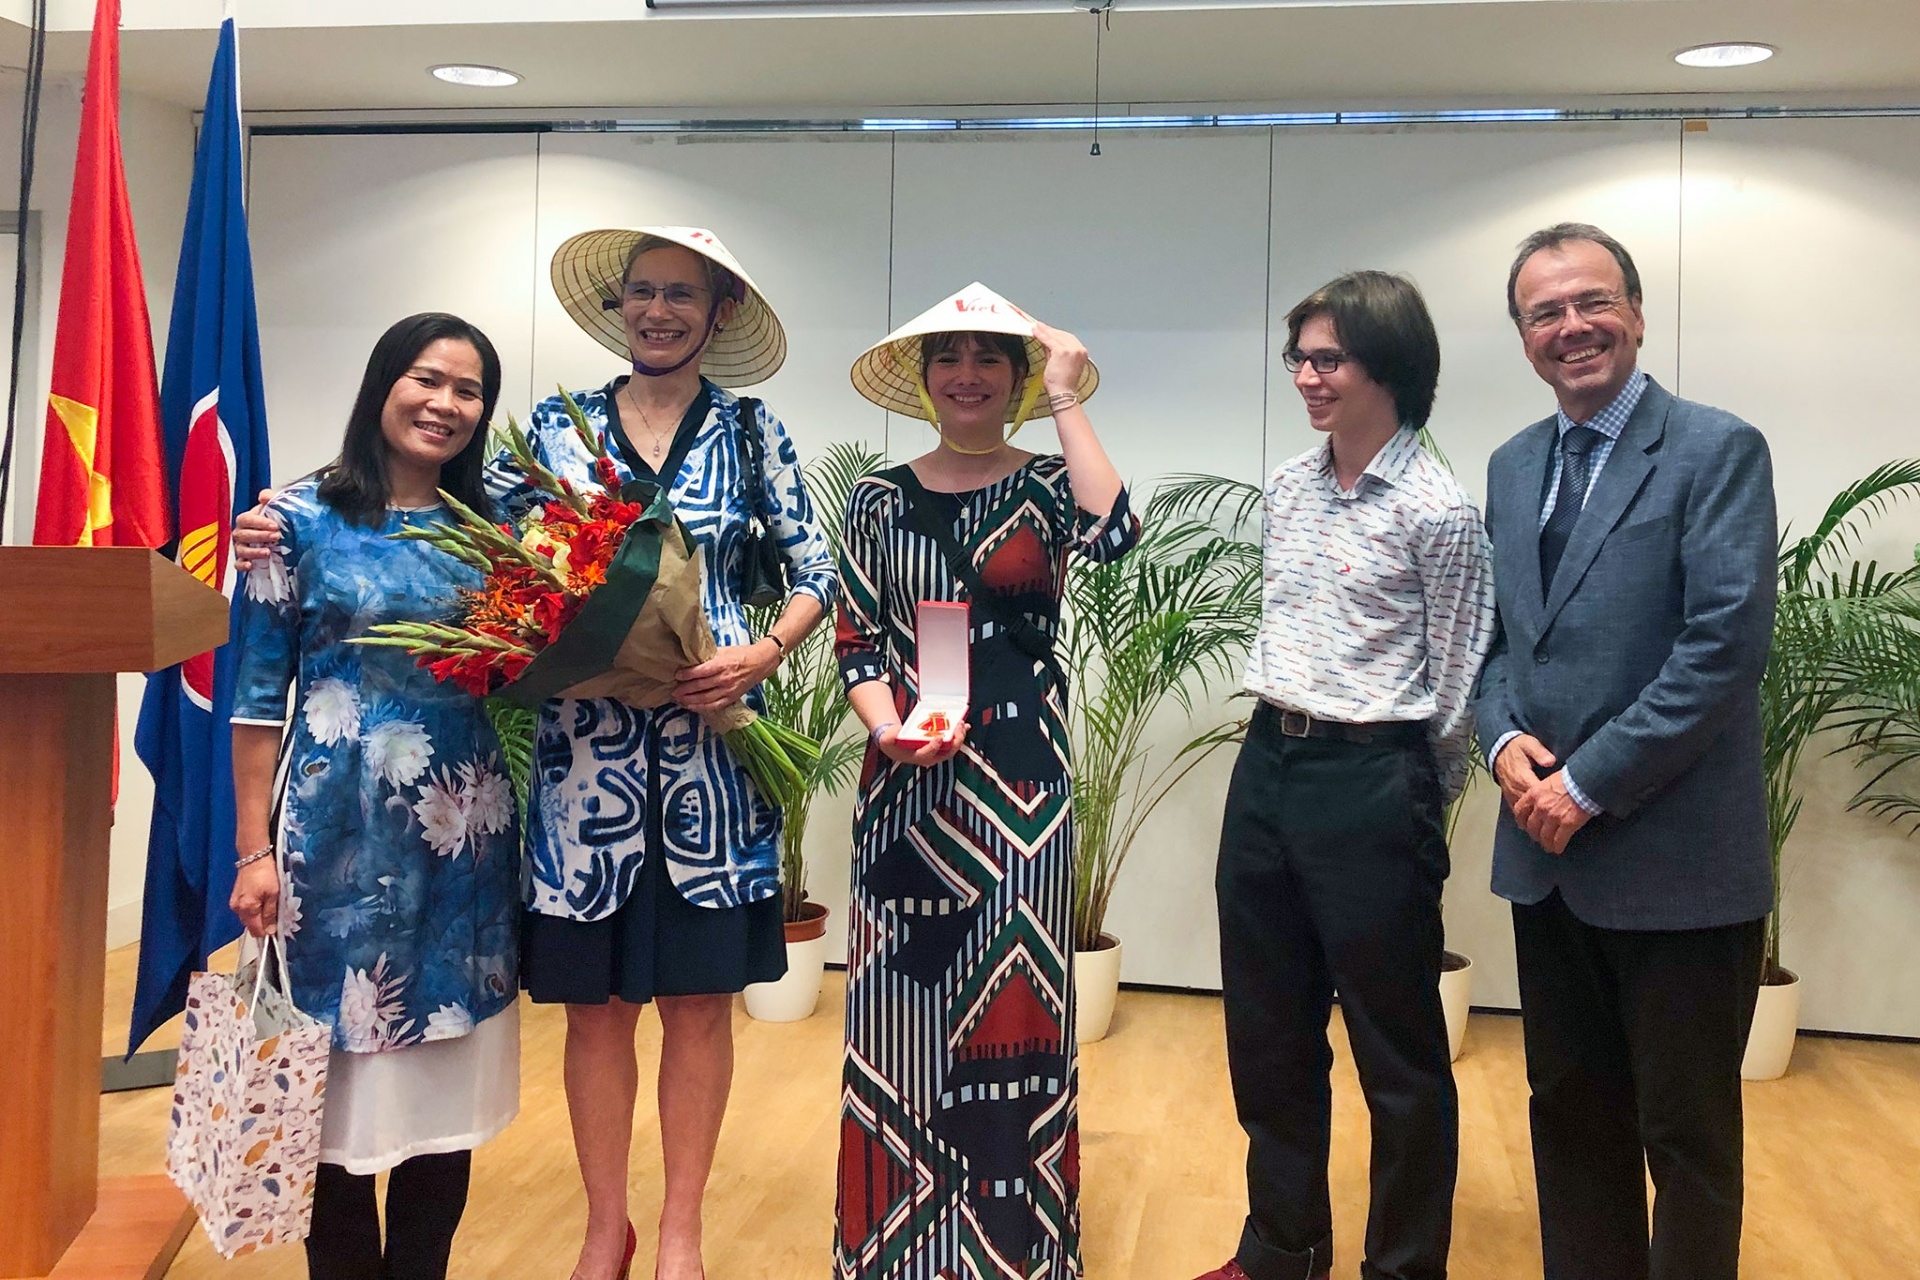 Đại sứ Hà Lan đội nón lá Việt Nam nhận Huân chương Hữu nghị